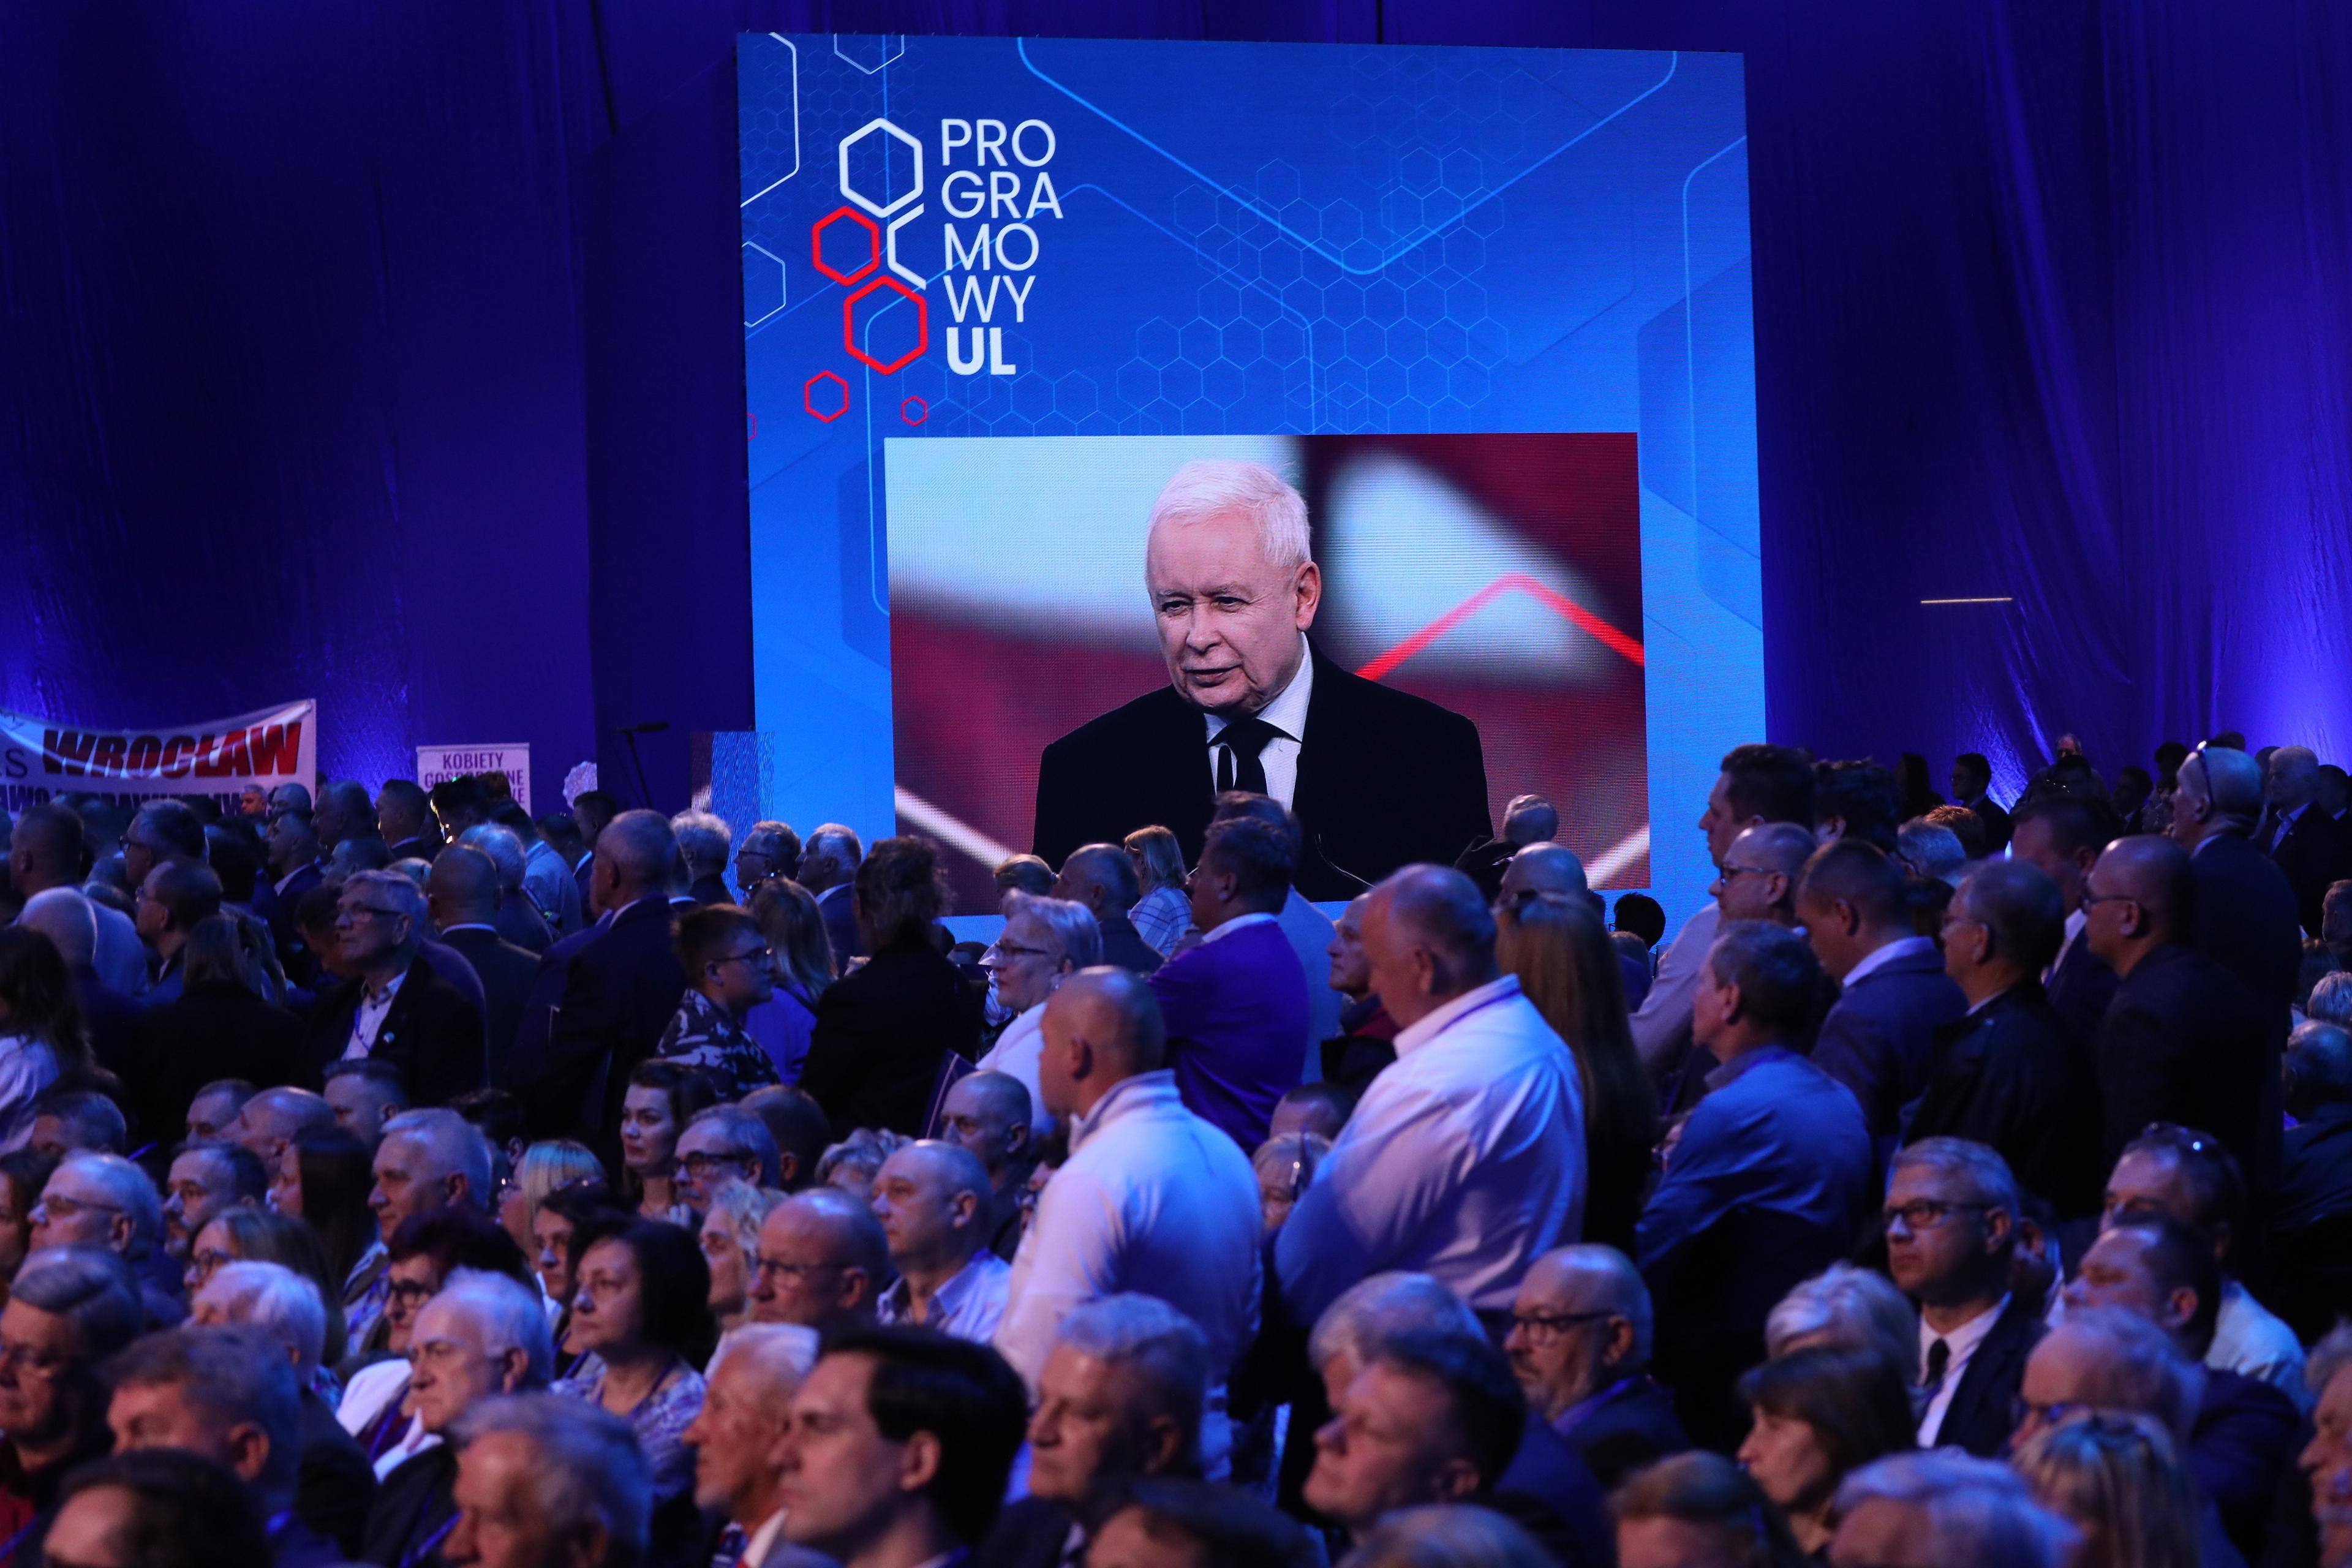 Na pierwszym planie publiczność siedzi na dużej sali, w tle na telebimie twarz Jarosława Kaczyńskiego, nad nim napis "Programowy Ul"